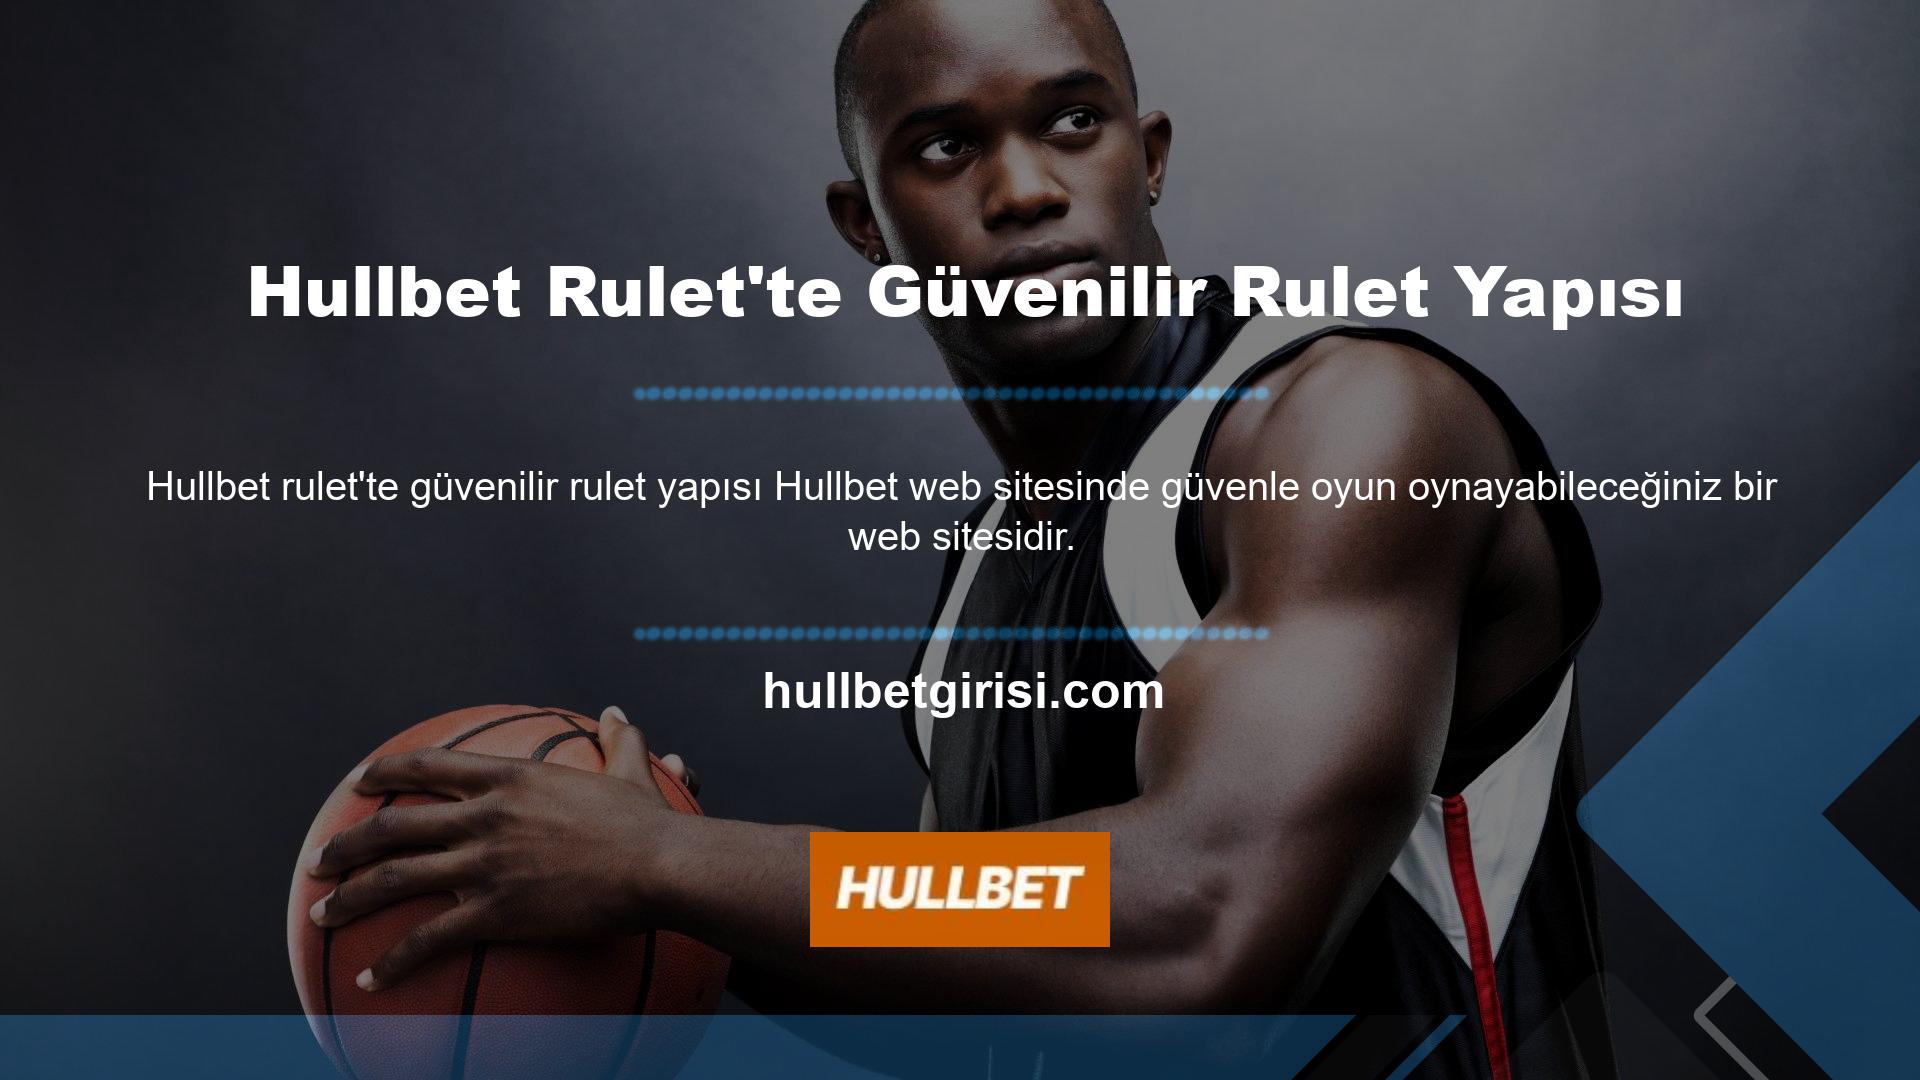 Güvenilir rulet altyapısının arenası Hullbet Roulette'in güvenilir rulet yapısı olan Online Rulet'in sunduğu hizmetlerde lisanslama prensibi uygulanmaktadır